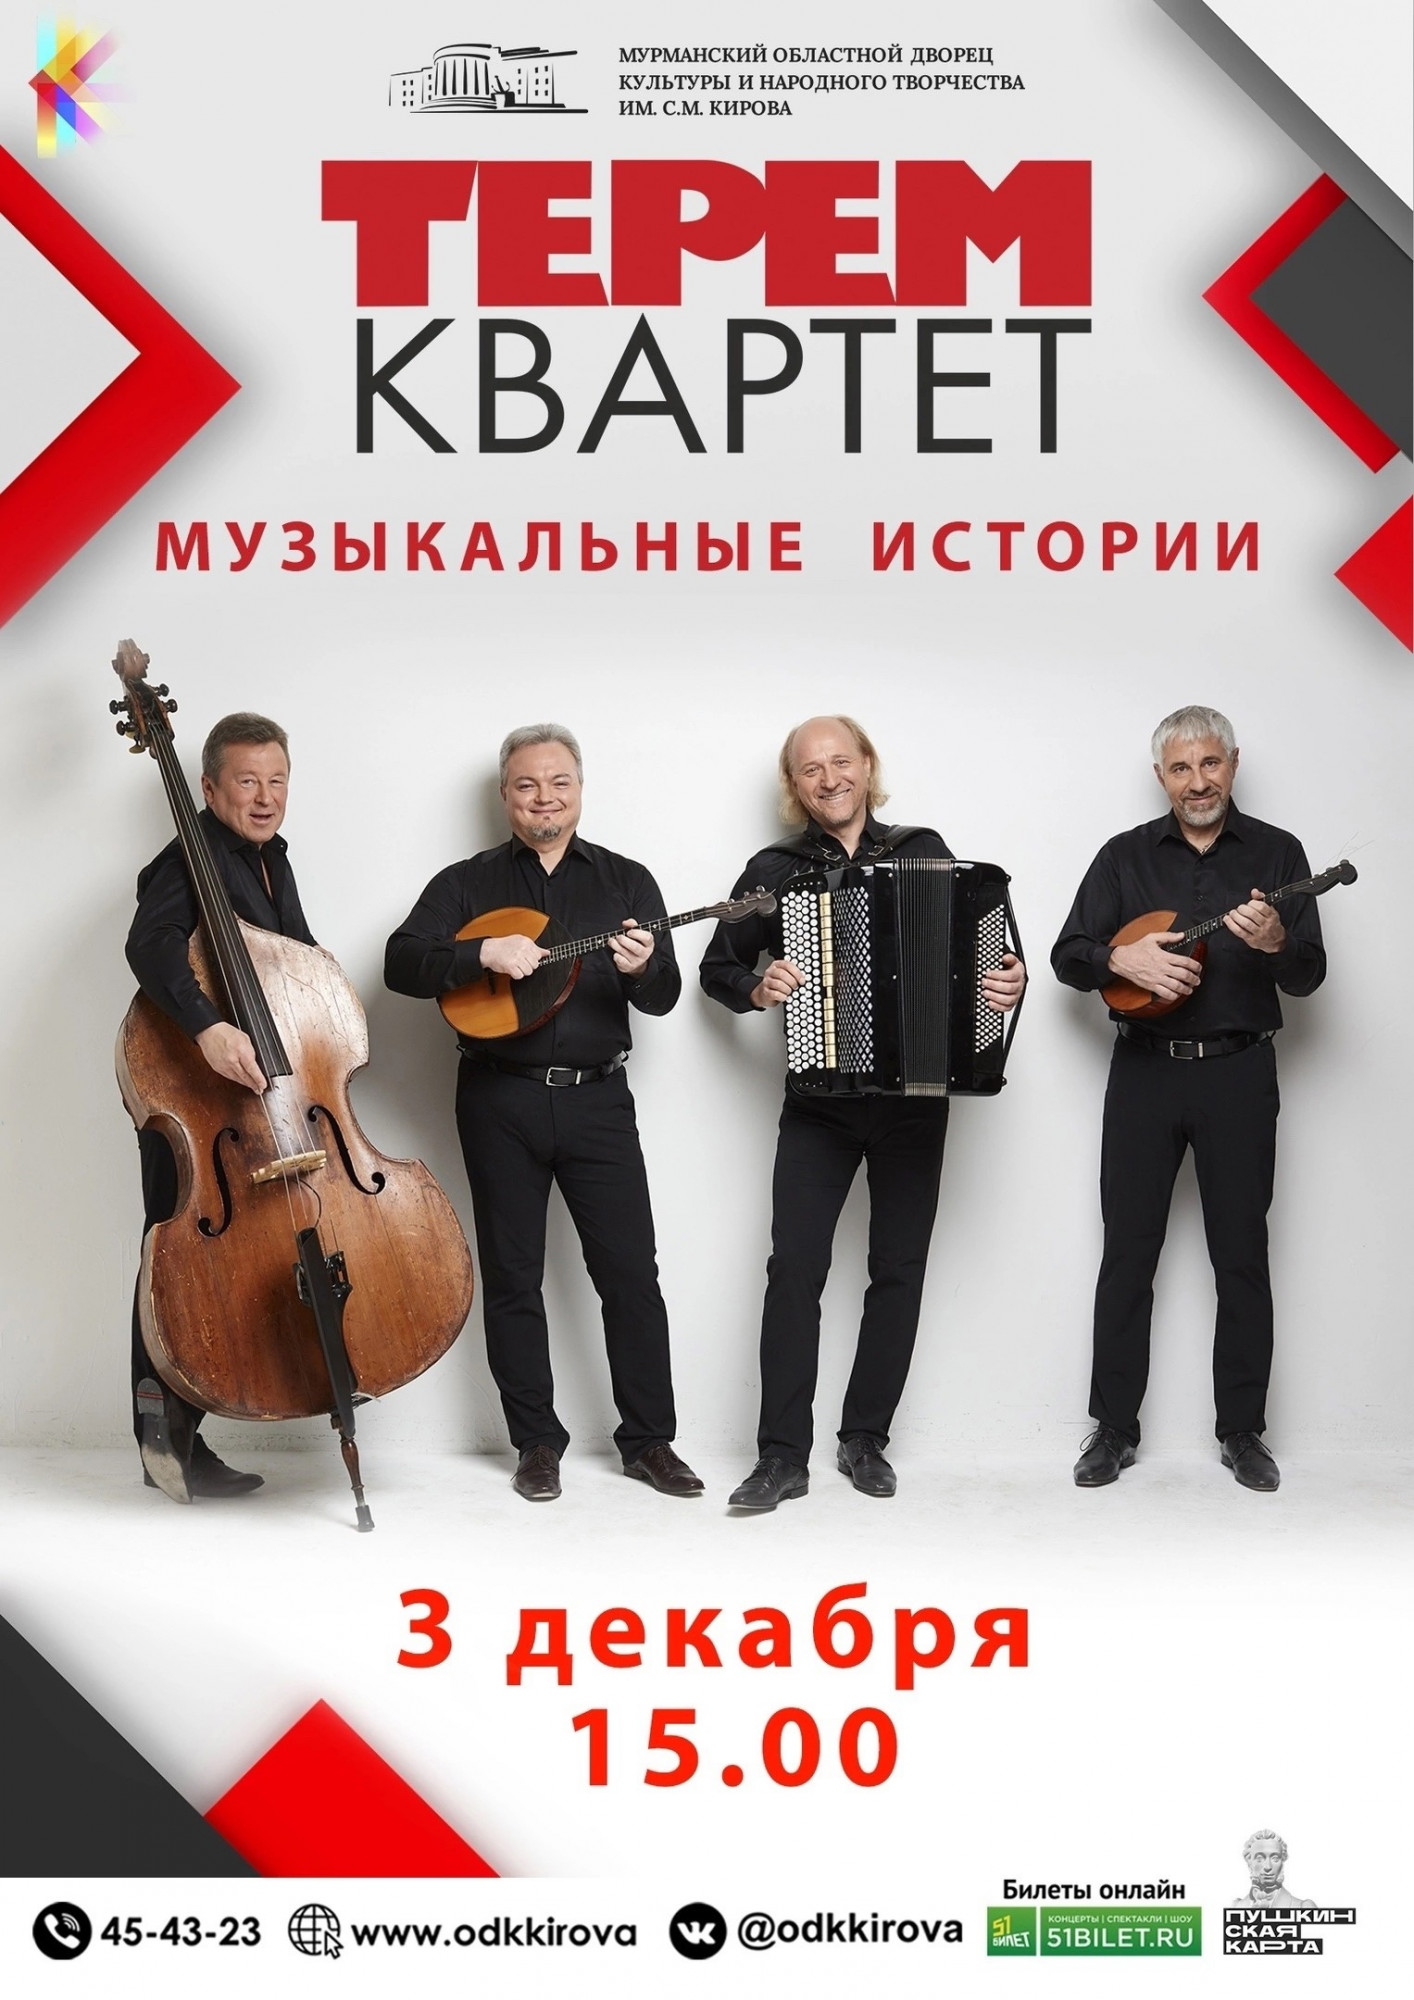 В Мурманске состоится грандиозный концерт Петербургского ансамбля «Терем-квартет»